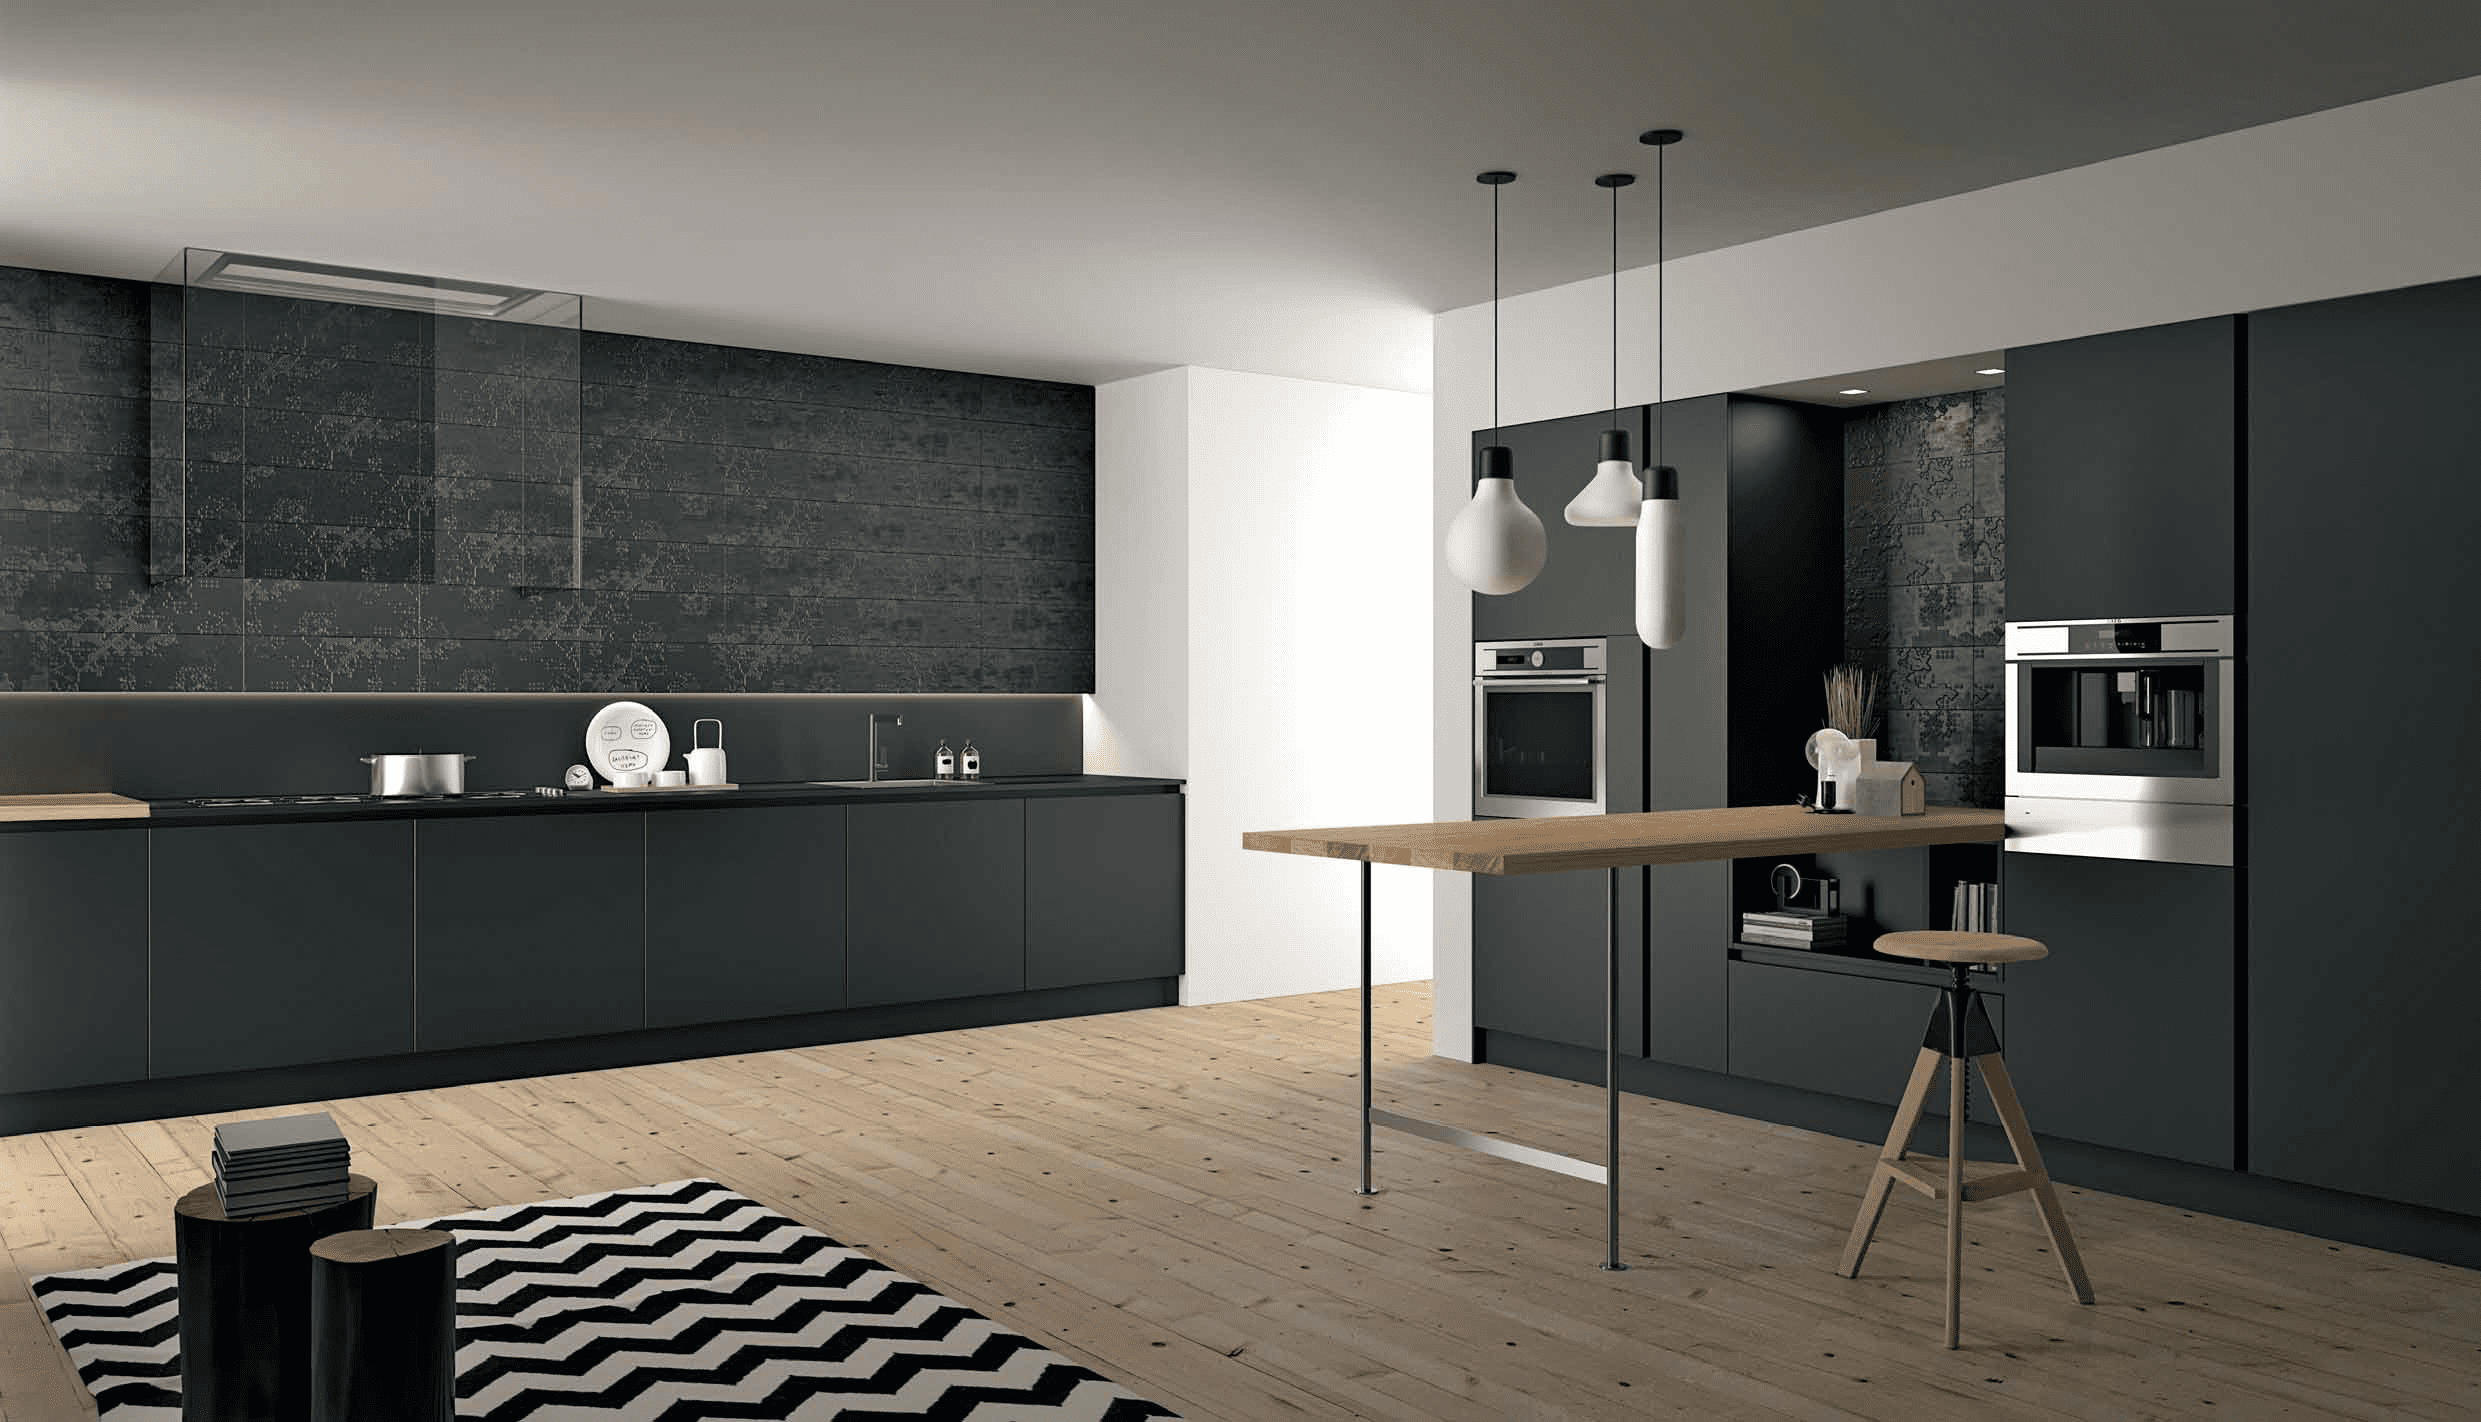 Кухонная мебель Doimo Cucine из серии Aspen из Италии